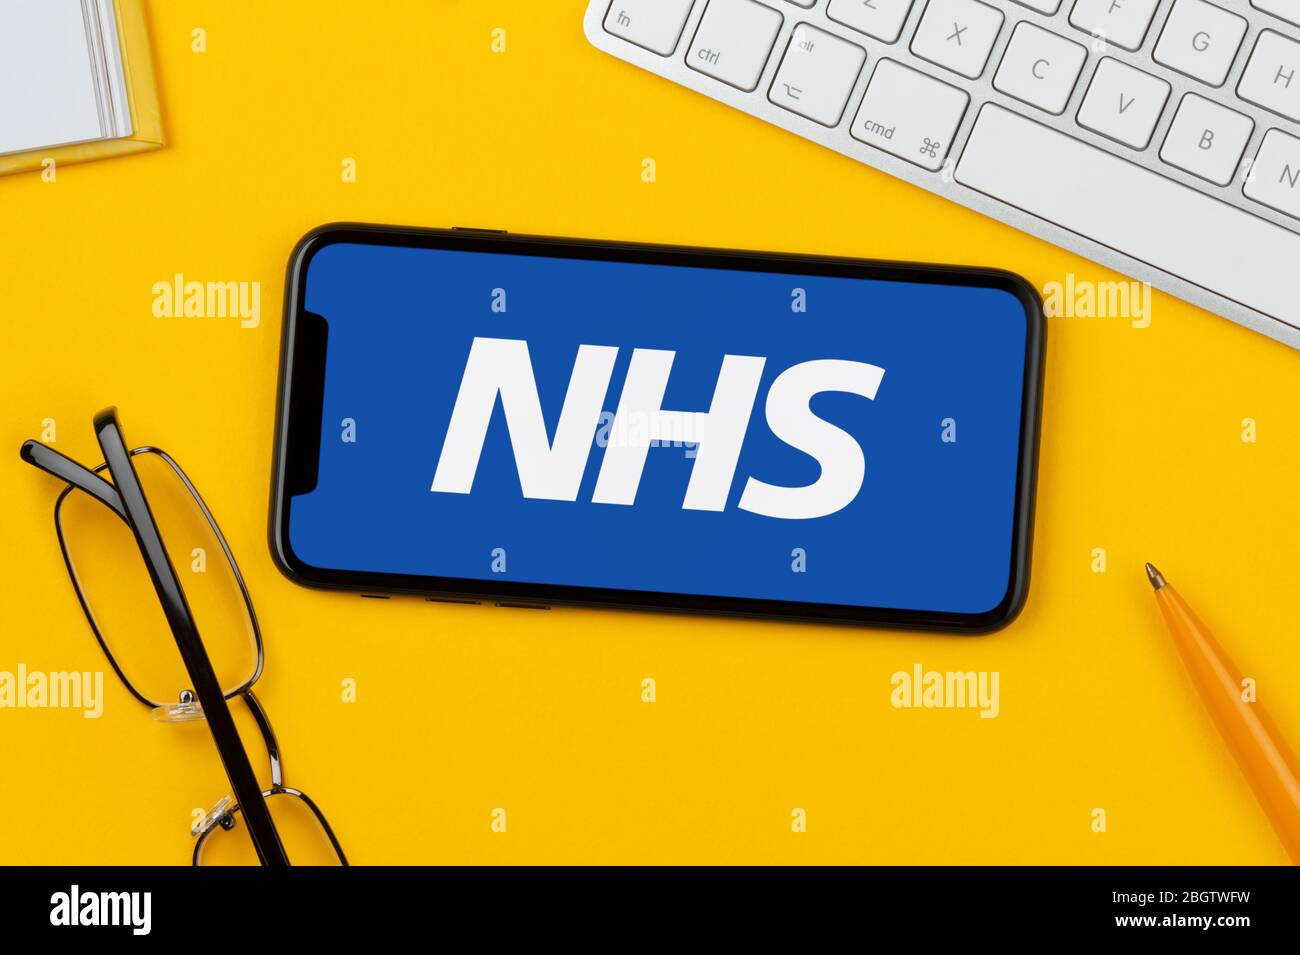 Uno smartphone con il logo NHS è posizionato su uno sfondo giallo insieme a tastiera, occhiali, penna e libro (solo per uso editoriale). Foto Stock